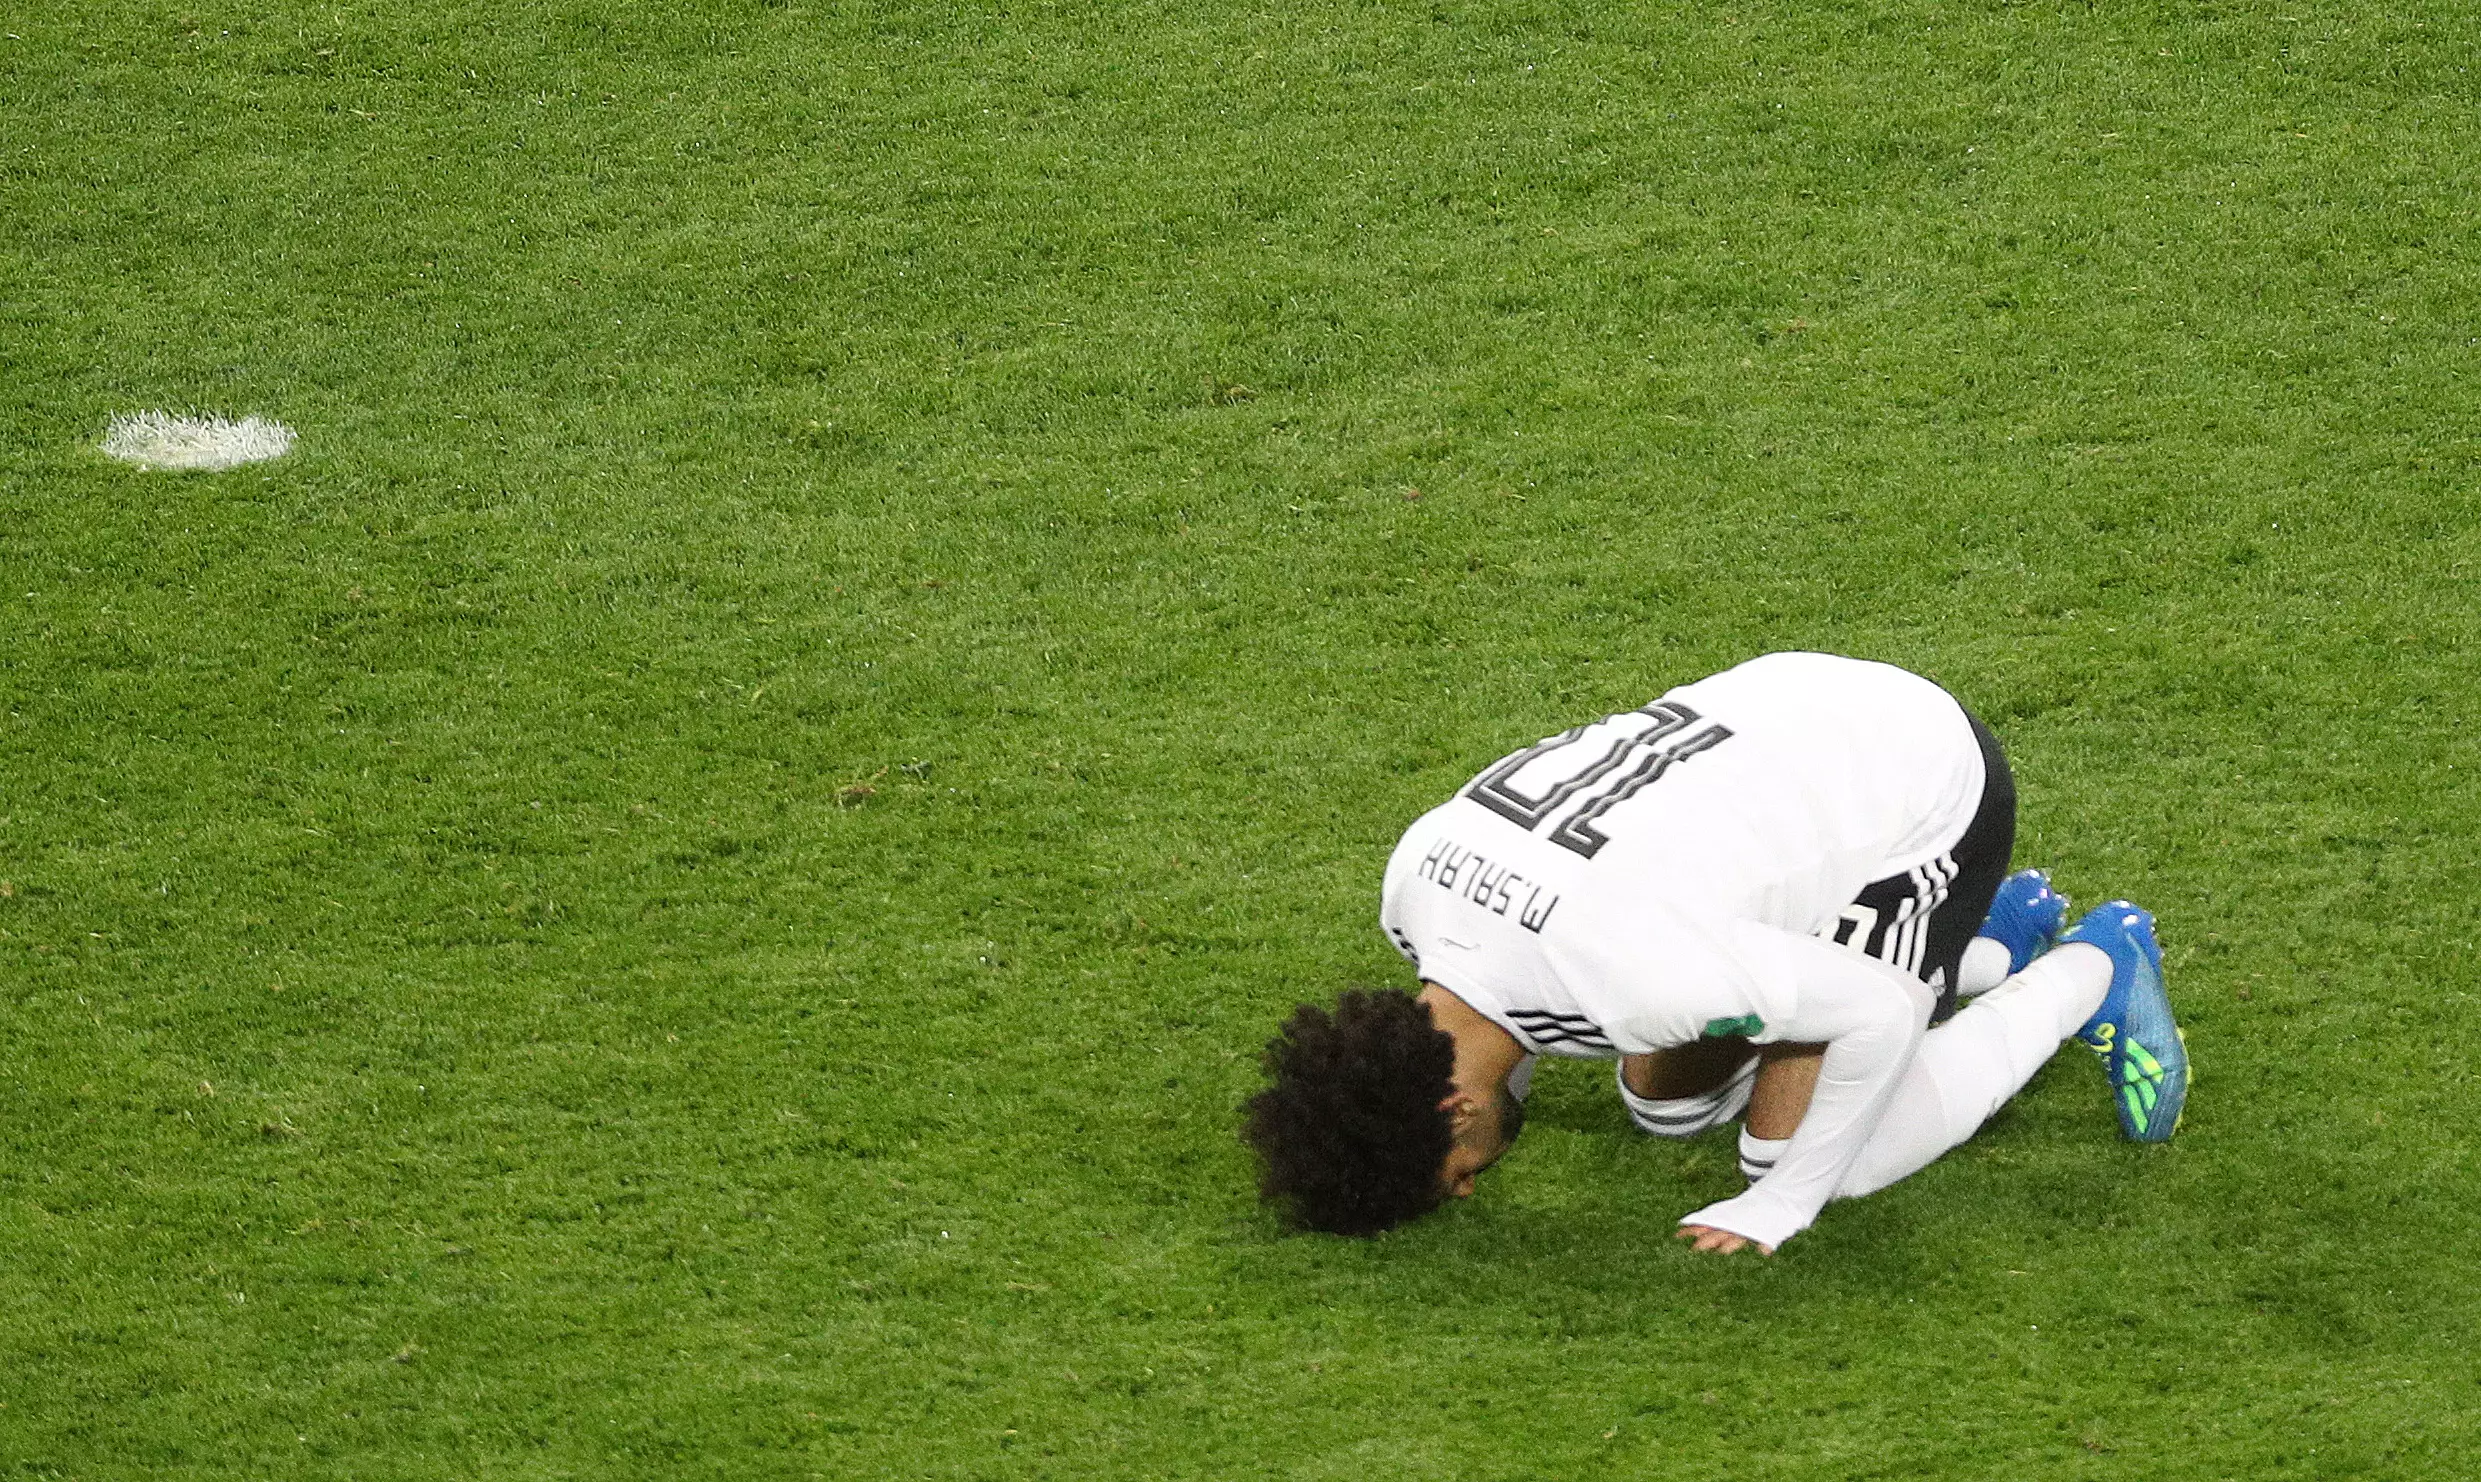 Salah after his goal. Image: PA Images